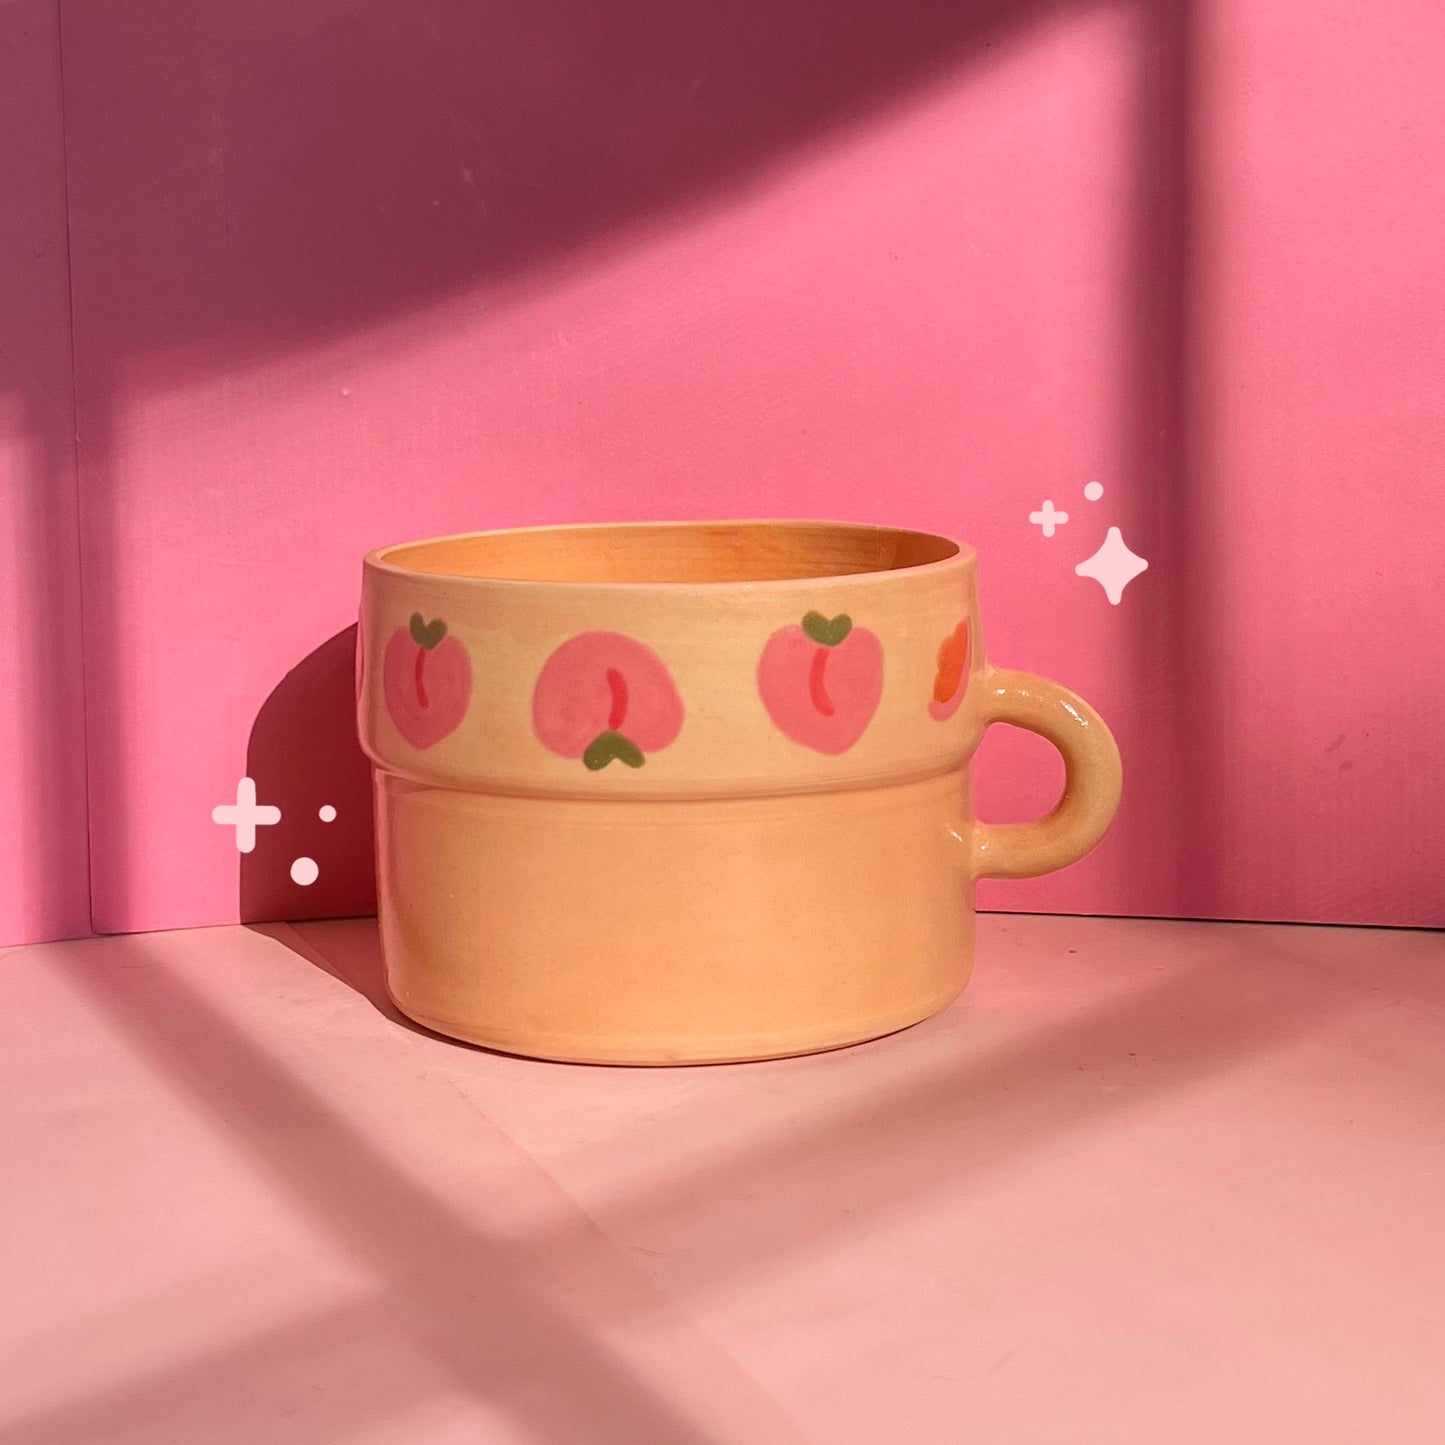 Peachy mug